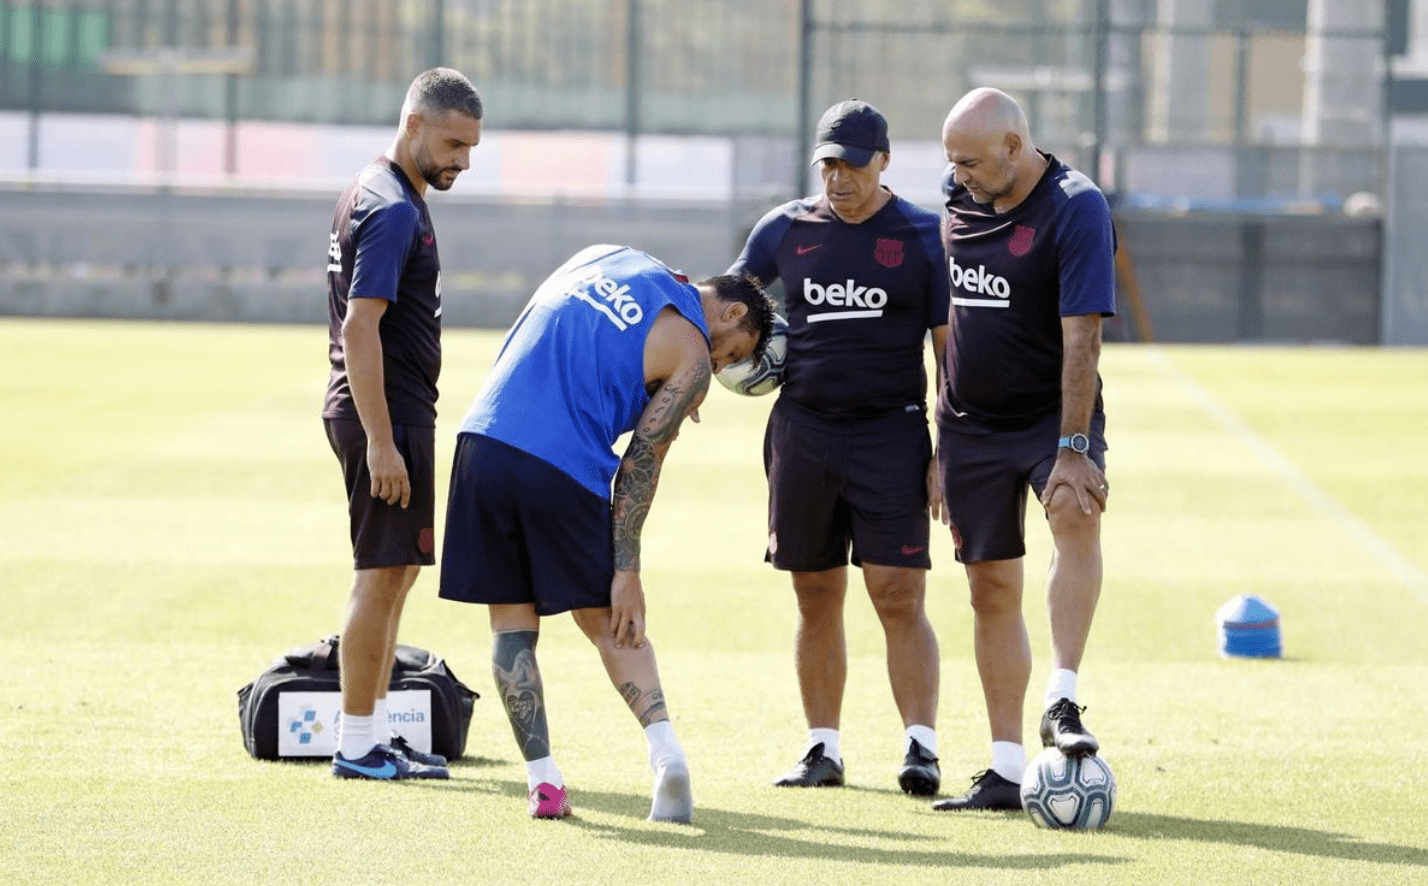 Messi injury